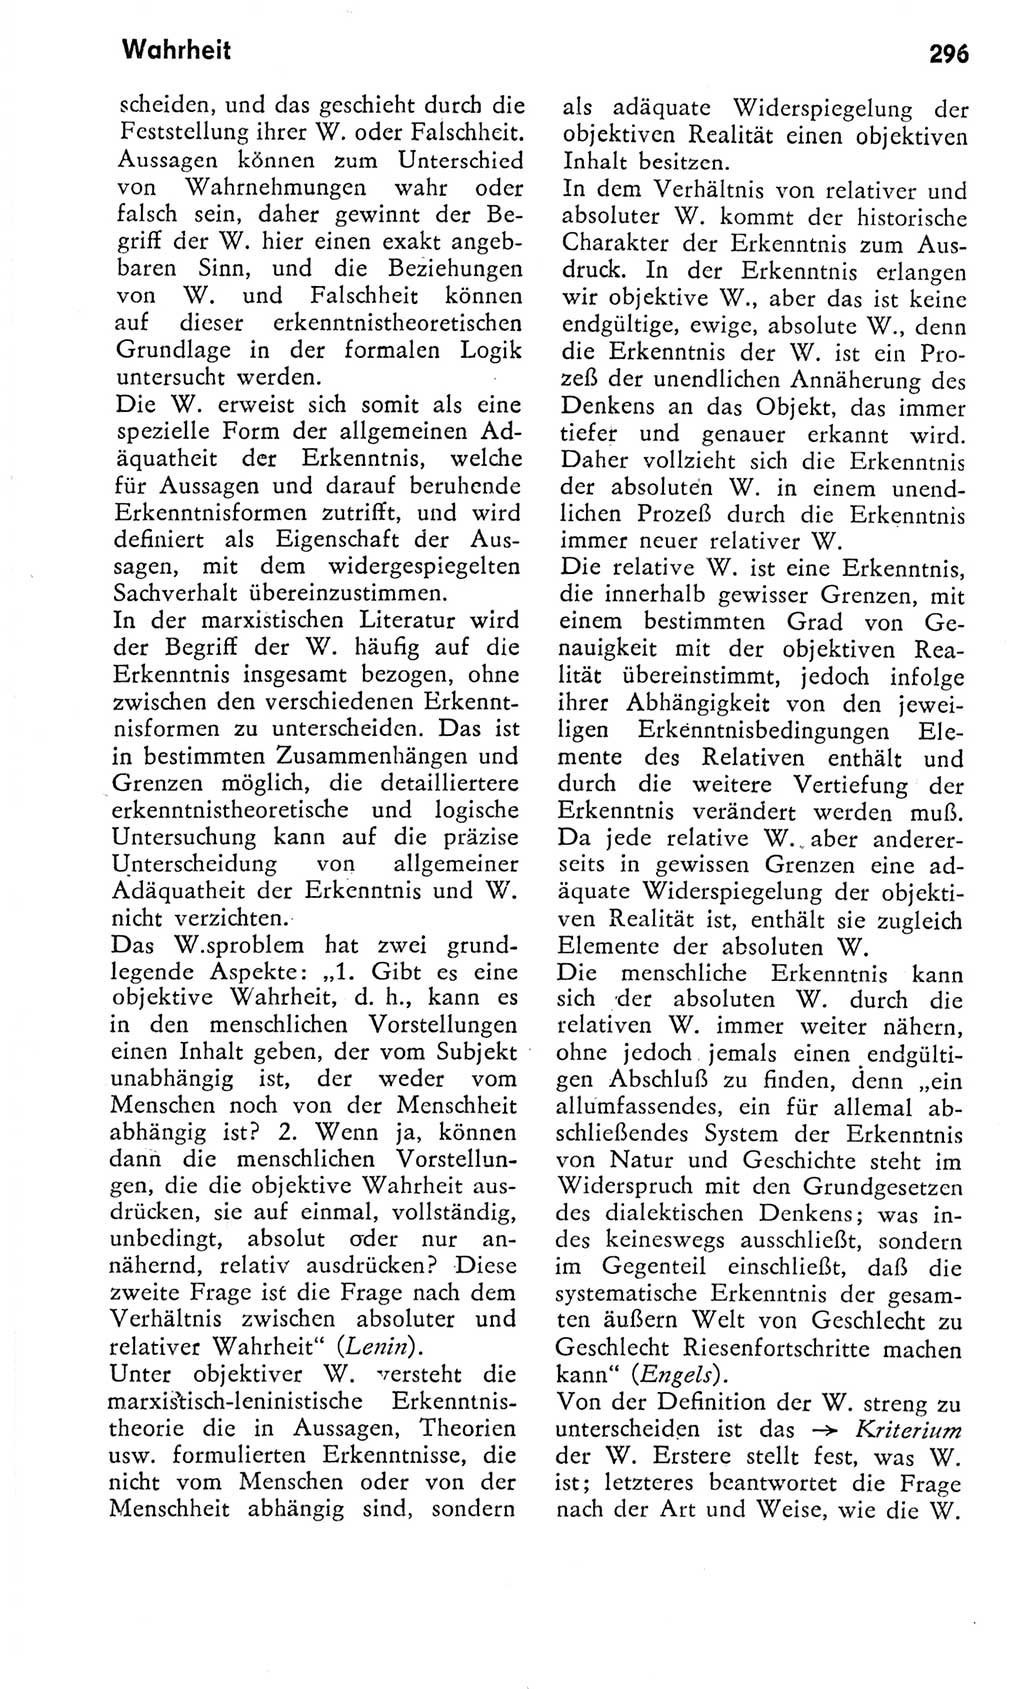 Kleines Wörterbuch der marxistisch-leninistischen Philosophie [Deutsche Demokratische Republik (DDR)] 1975, Seite 296 (Kl. Wb. ML Phil. DDR 1975, S. 296)